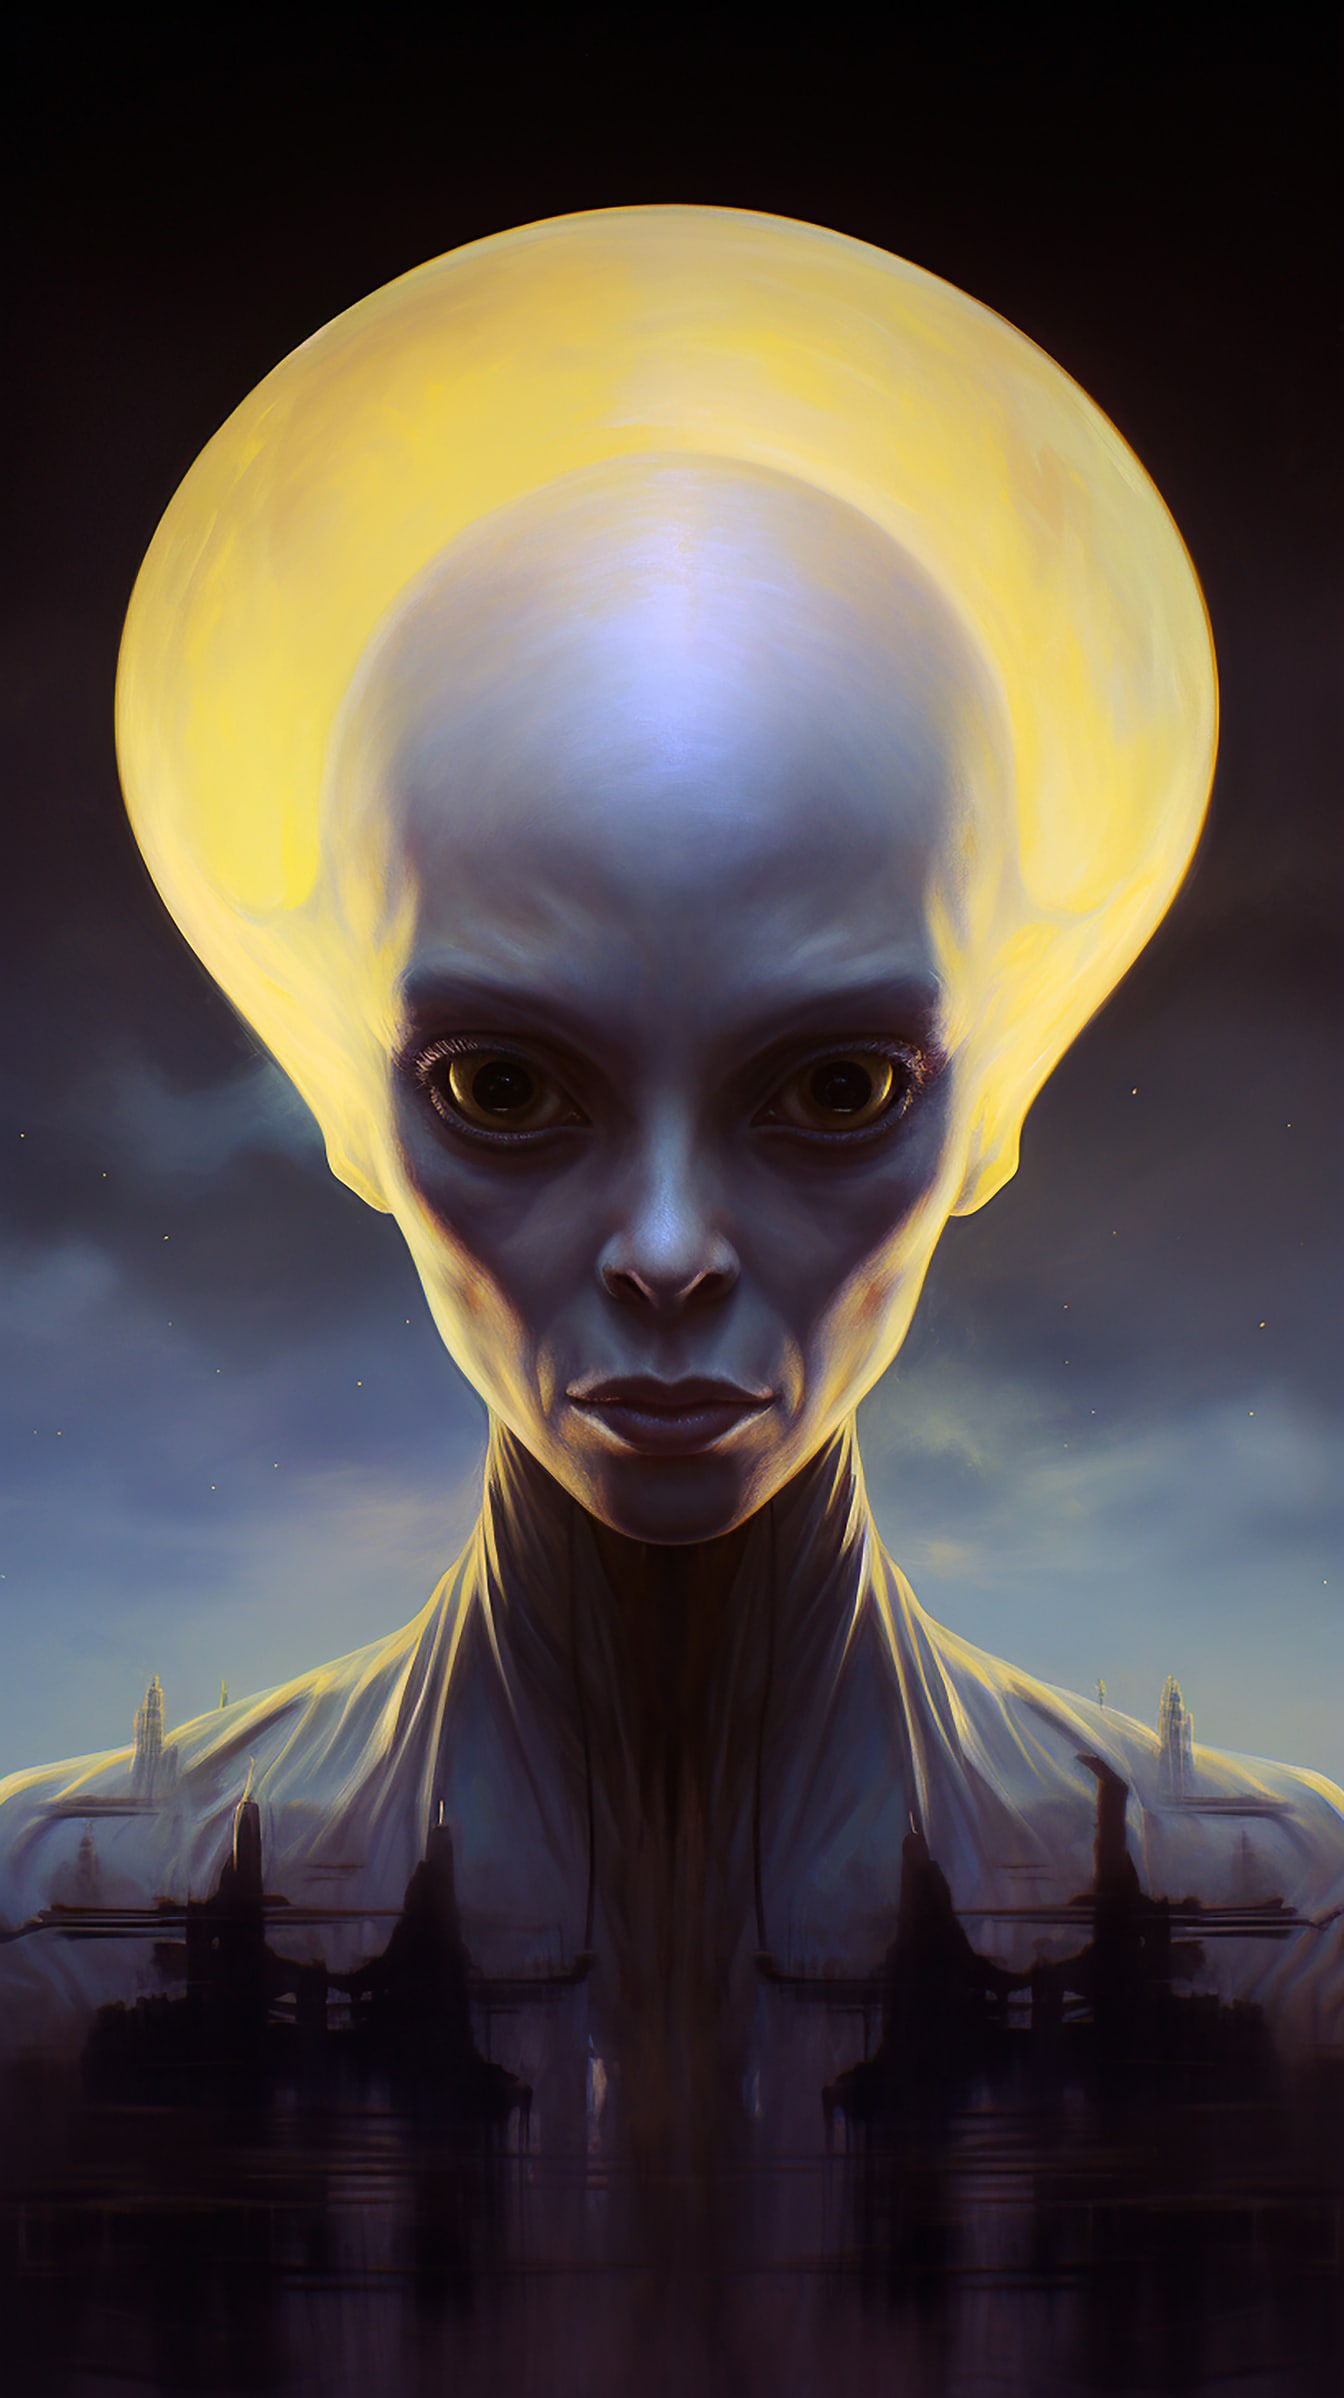 Retrato de una criatura alienígena humanoide con una cabeza grande